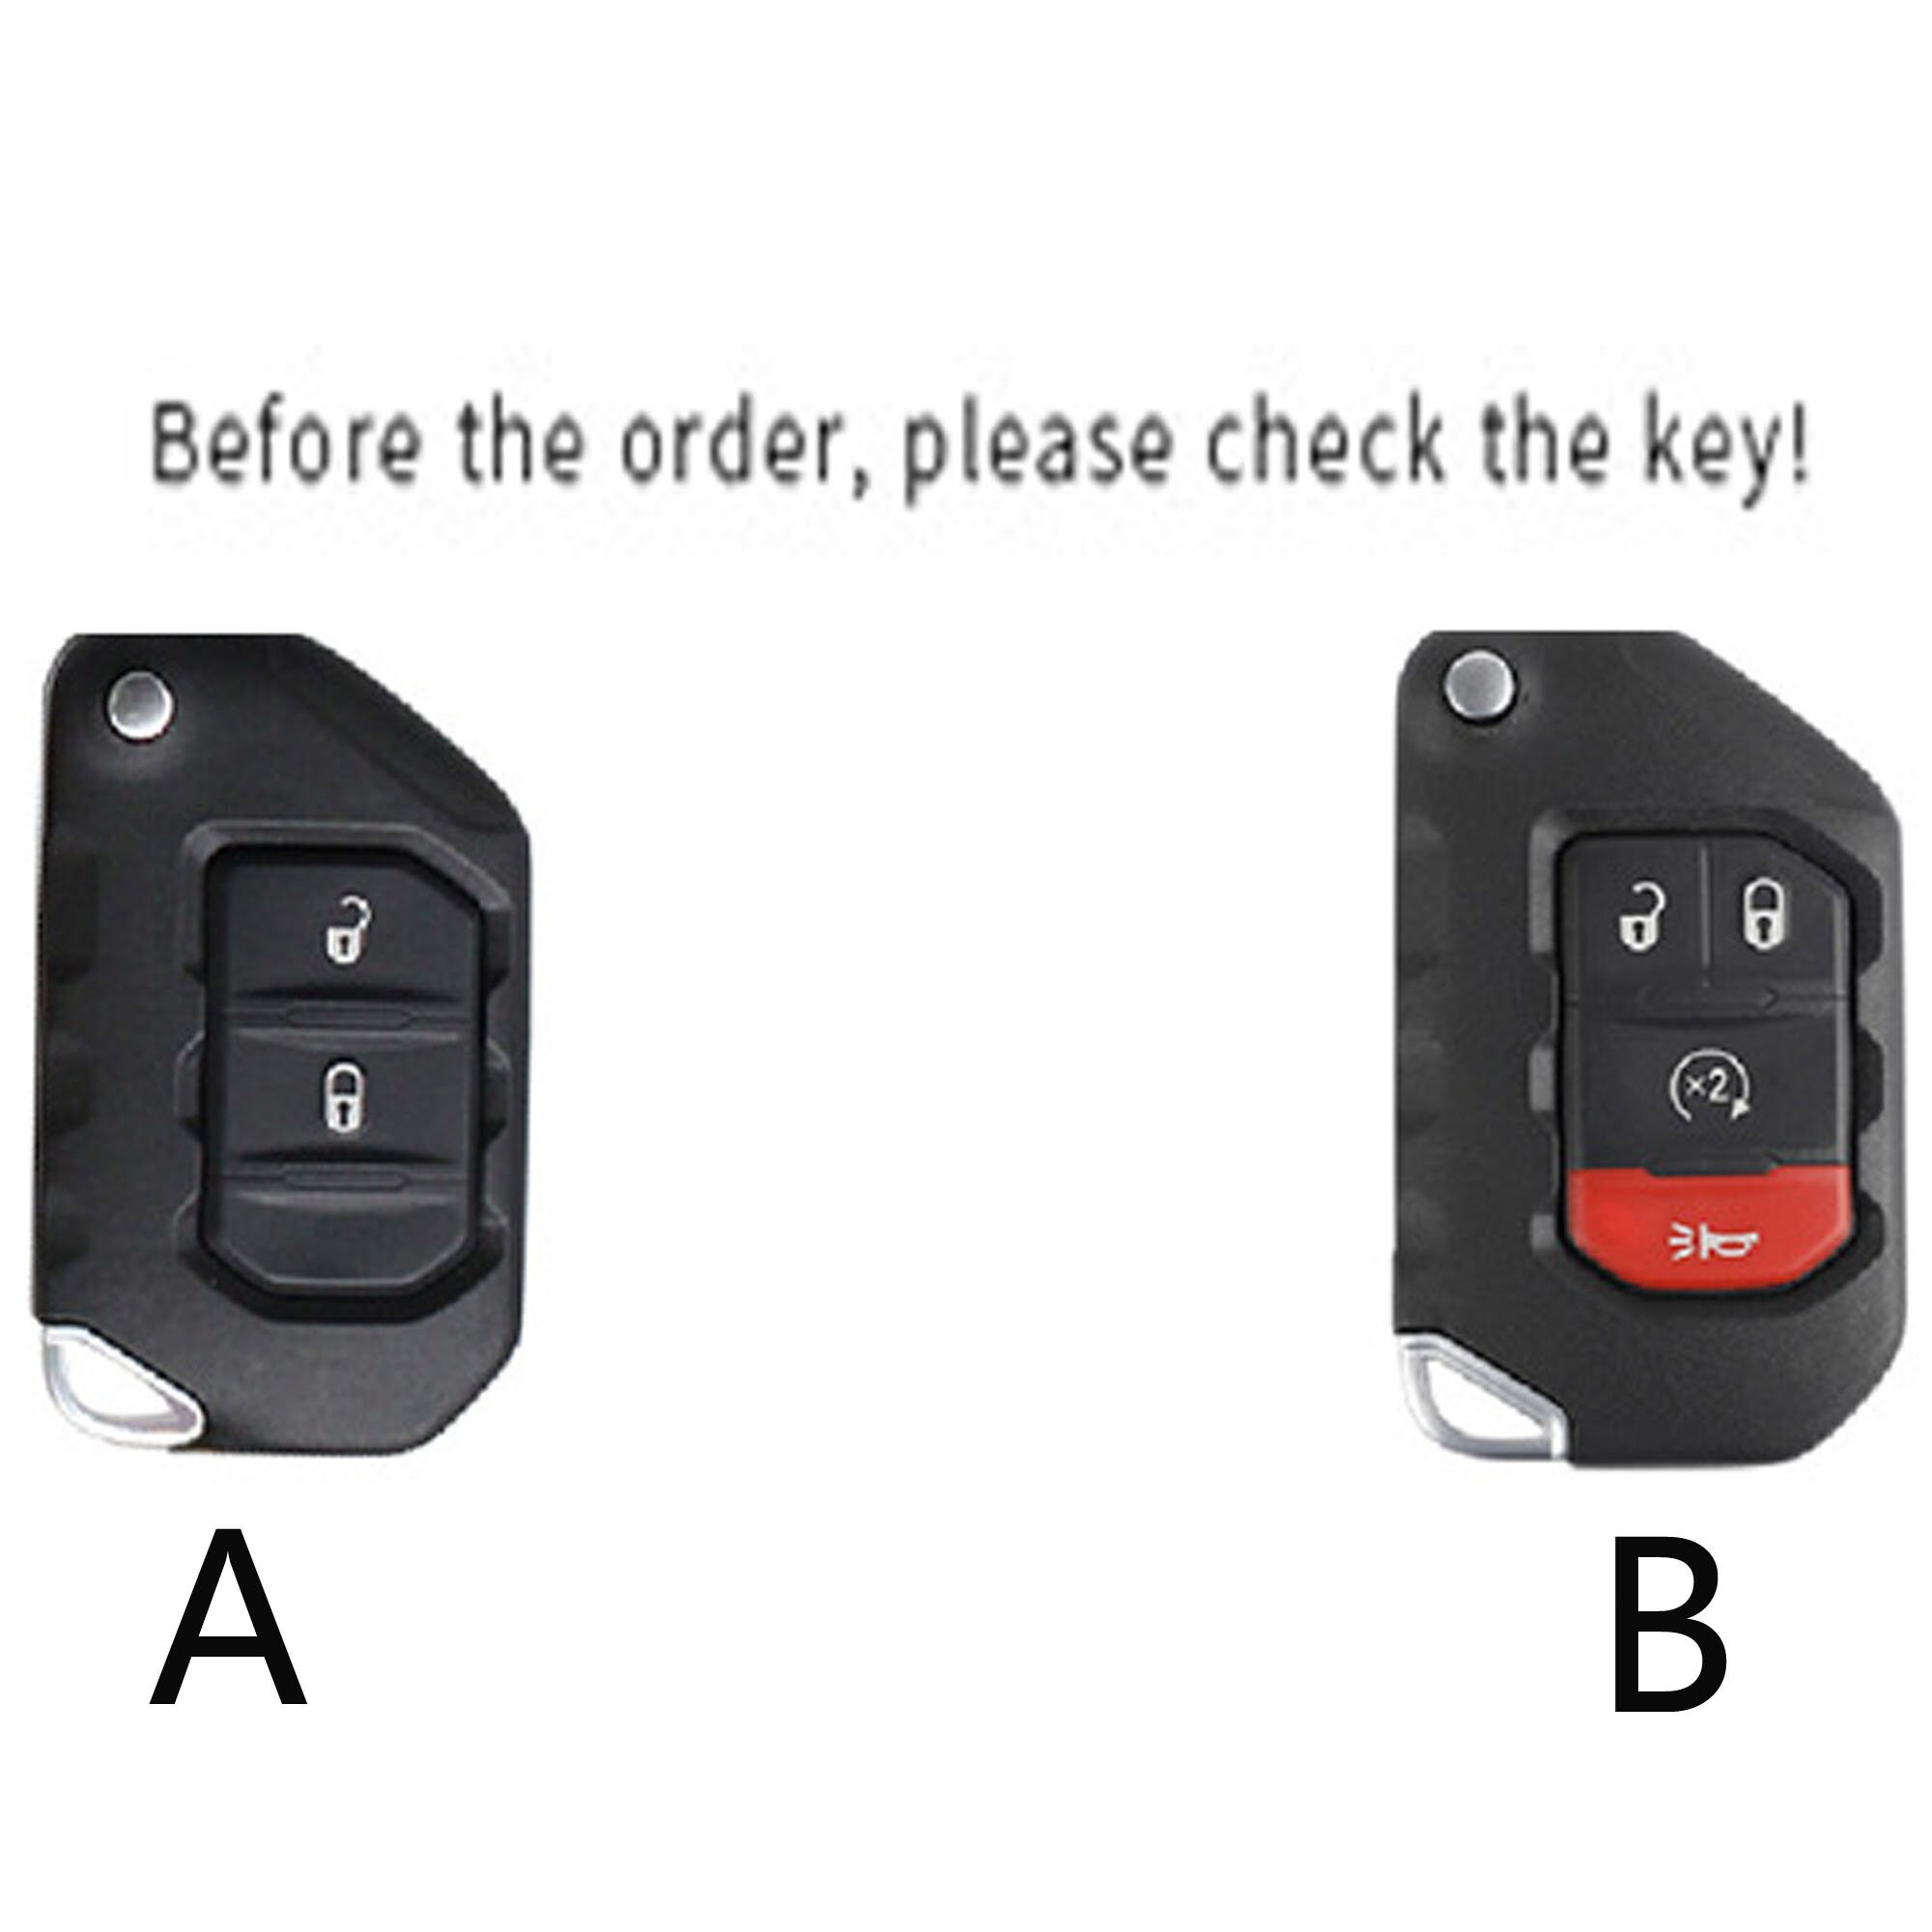 Handgefertigtes Leder-Autoschlüsseletui ist geeignet für Wrangler 2 4  Tasten Smart-Remote-Shell-Schlüsseletui, Schlüsselanhänger-Abdeckung - . de